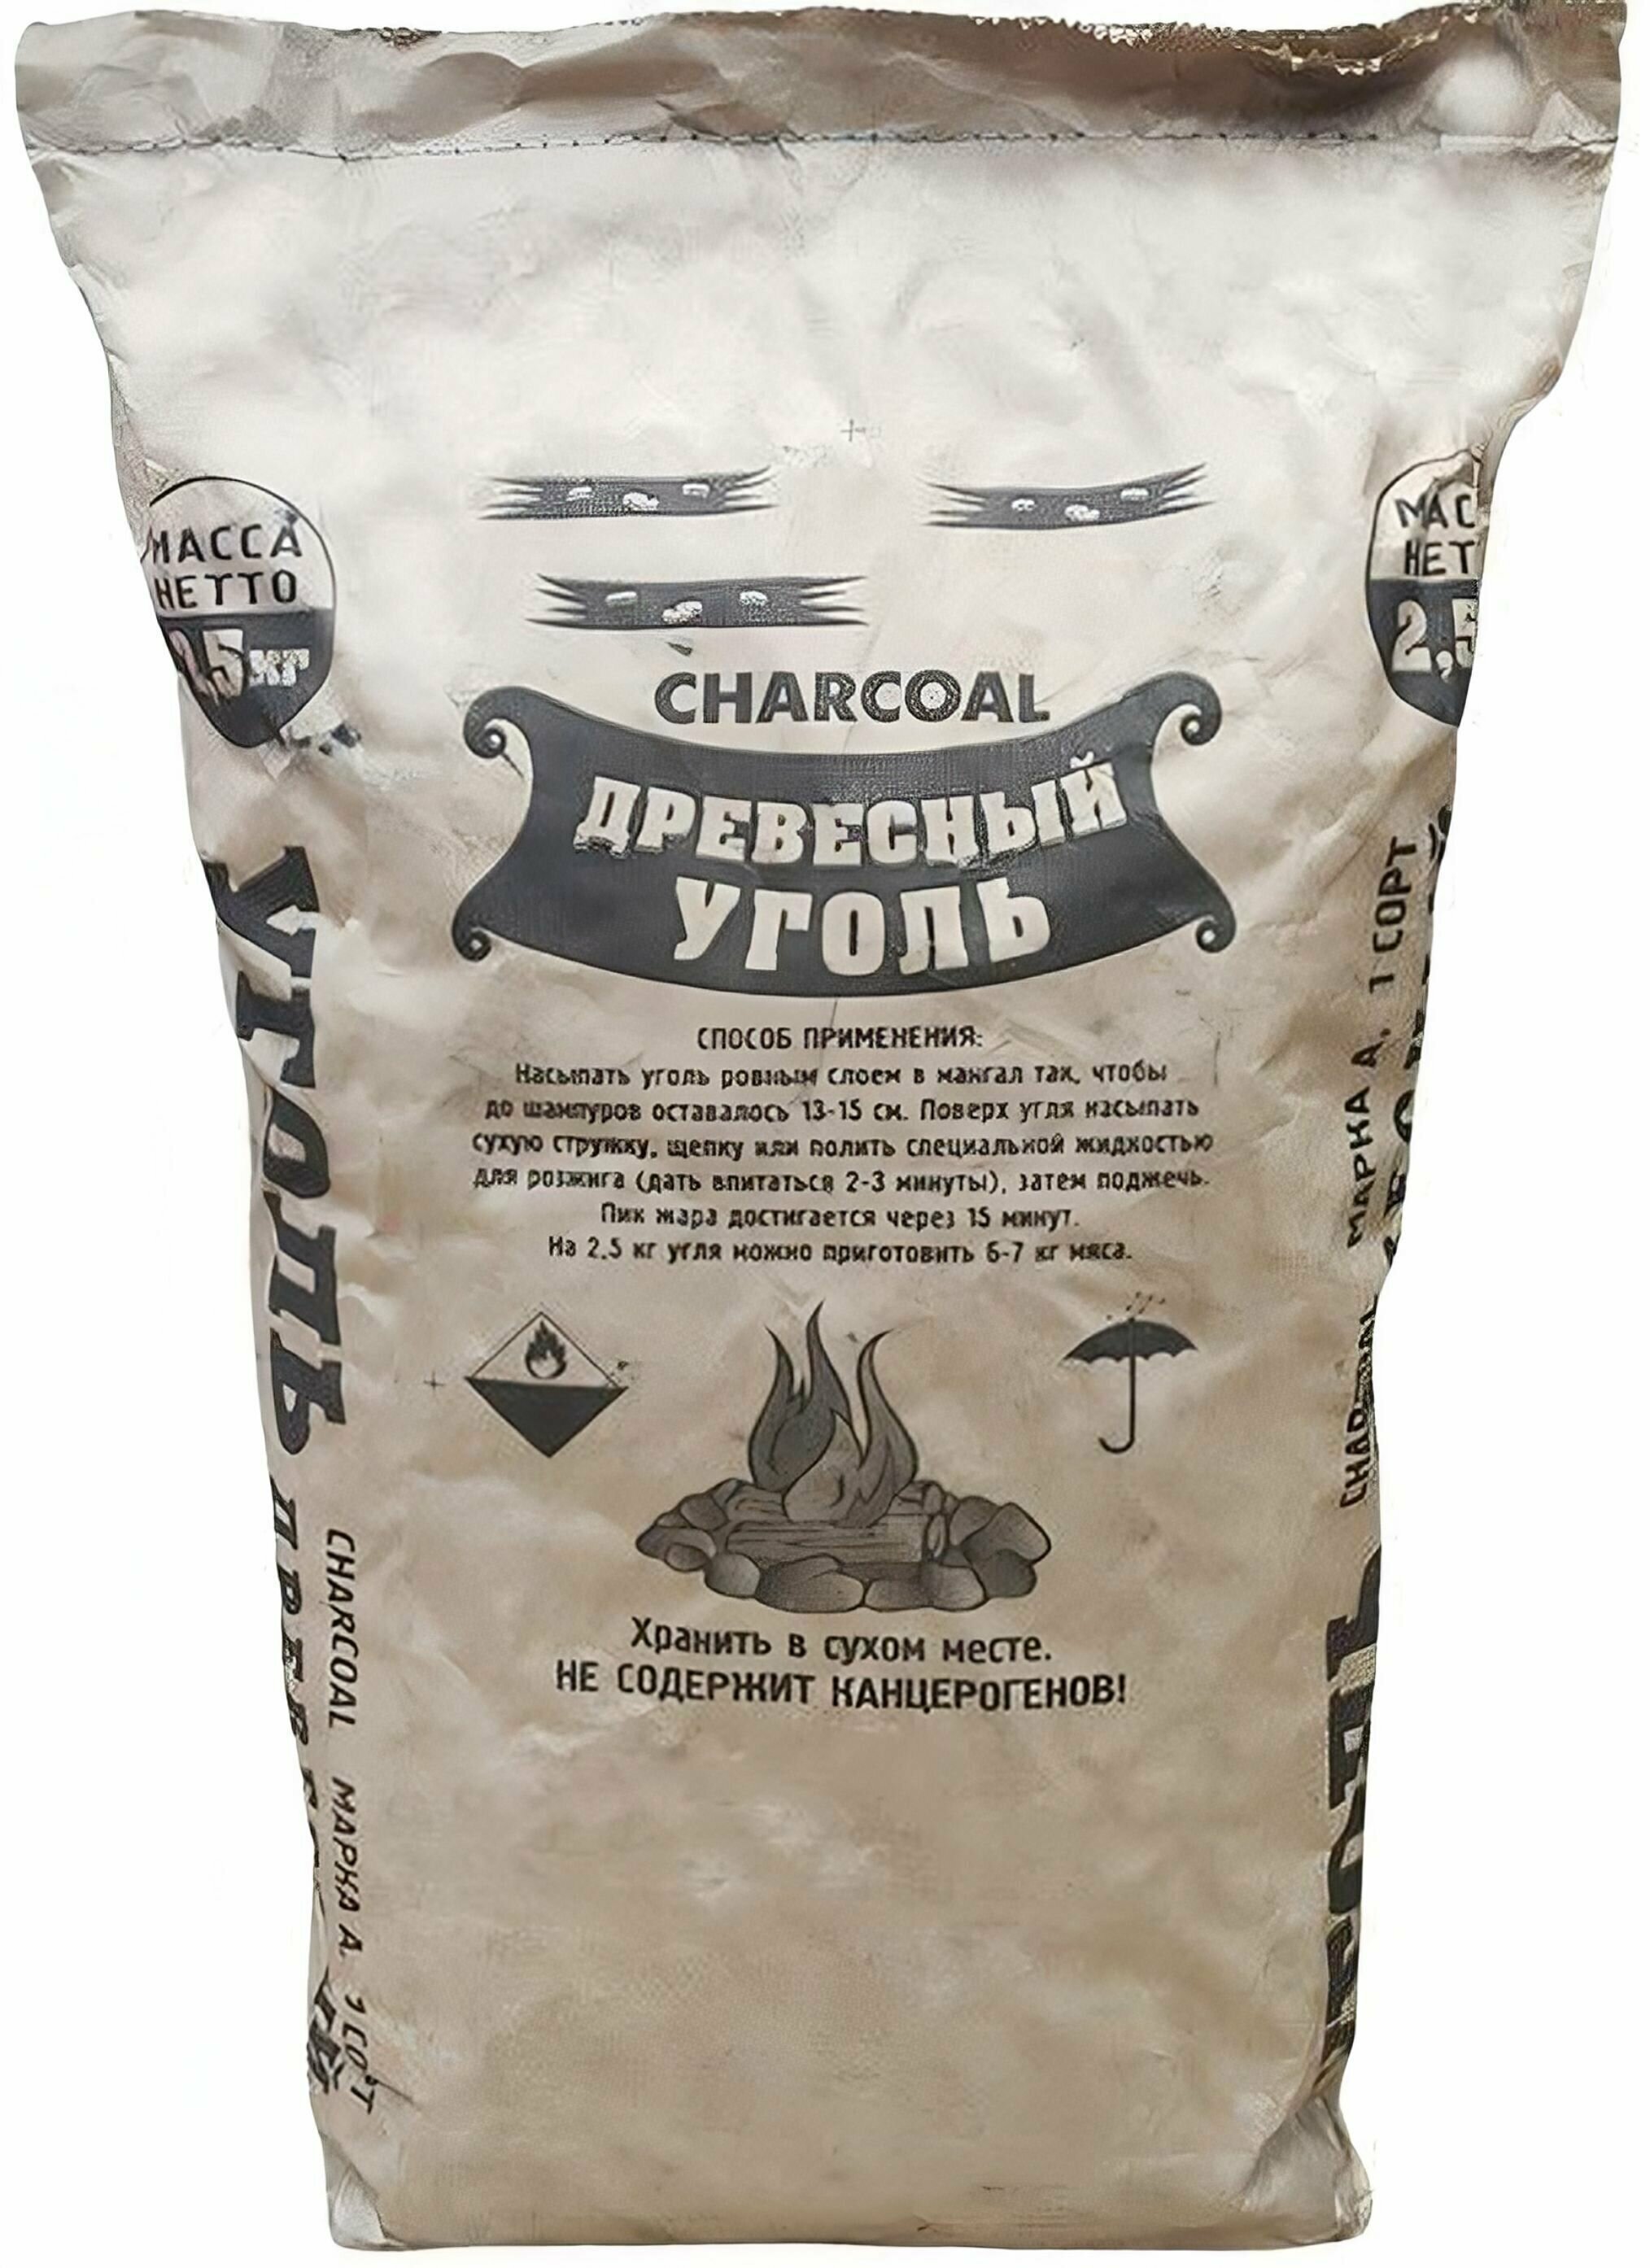 Уголь березовый, 2,5 кг: из экологически чистой березовой древесины; предназначен для приготовления мяса, рыбы, птицы и других продуктов, а так же в качестве топлива для каминов и печей